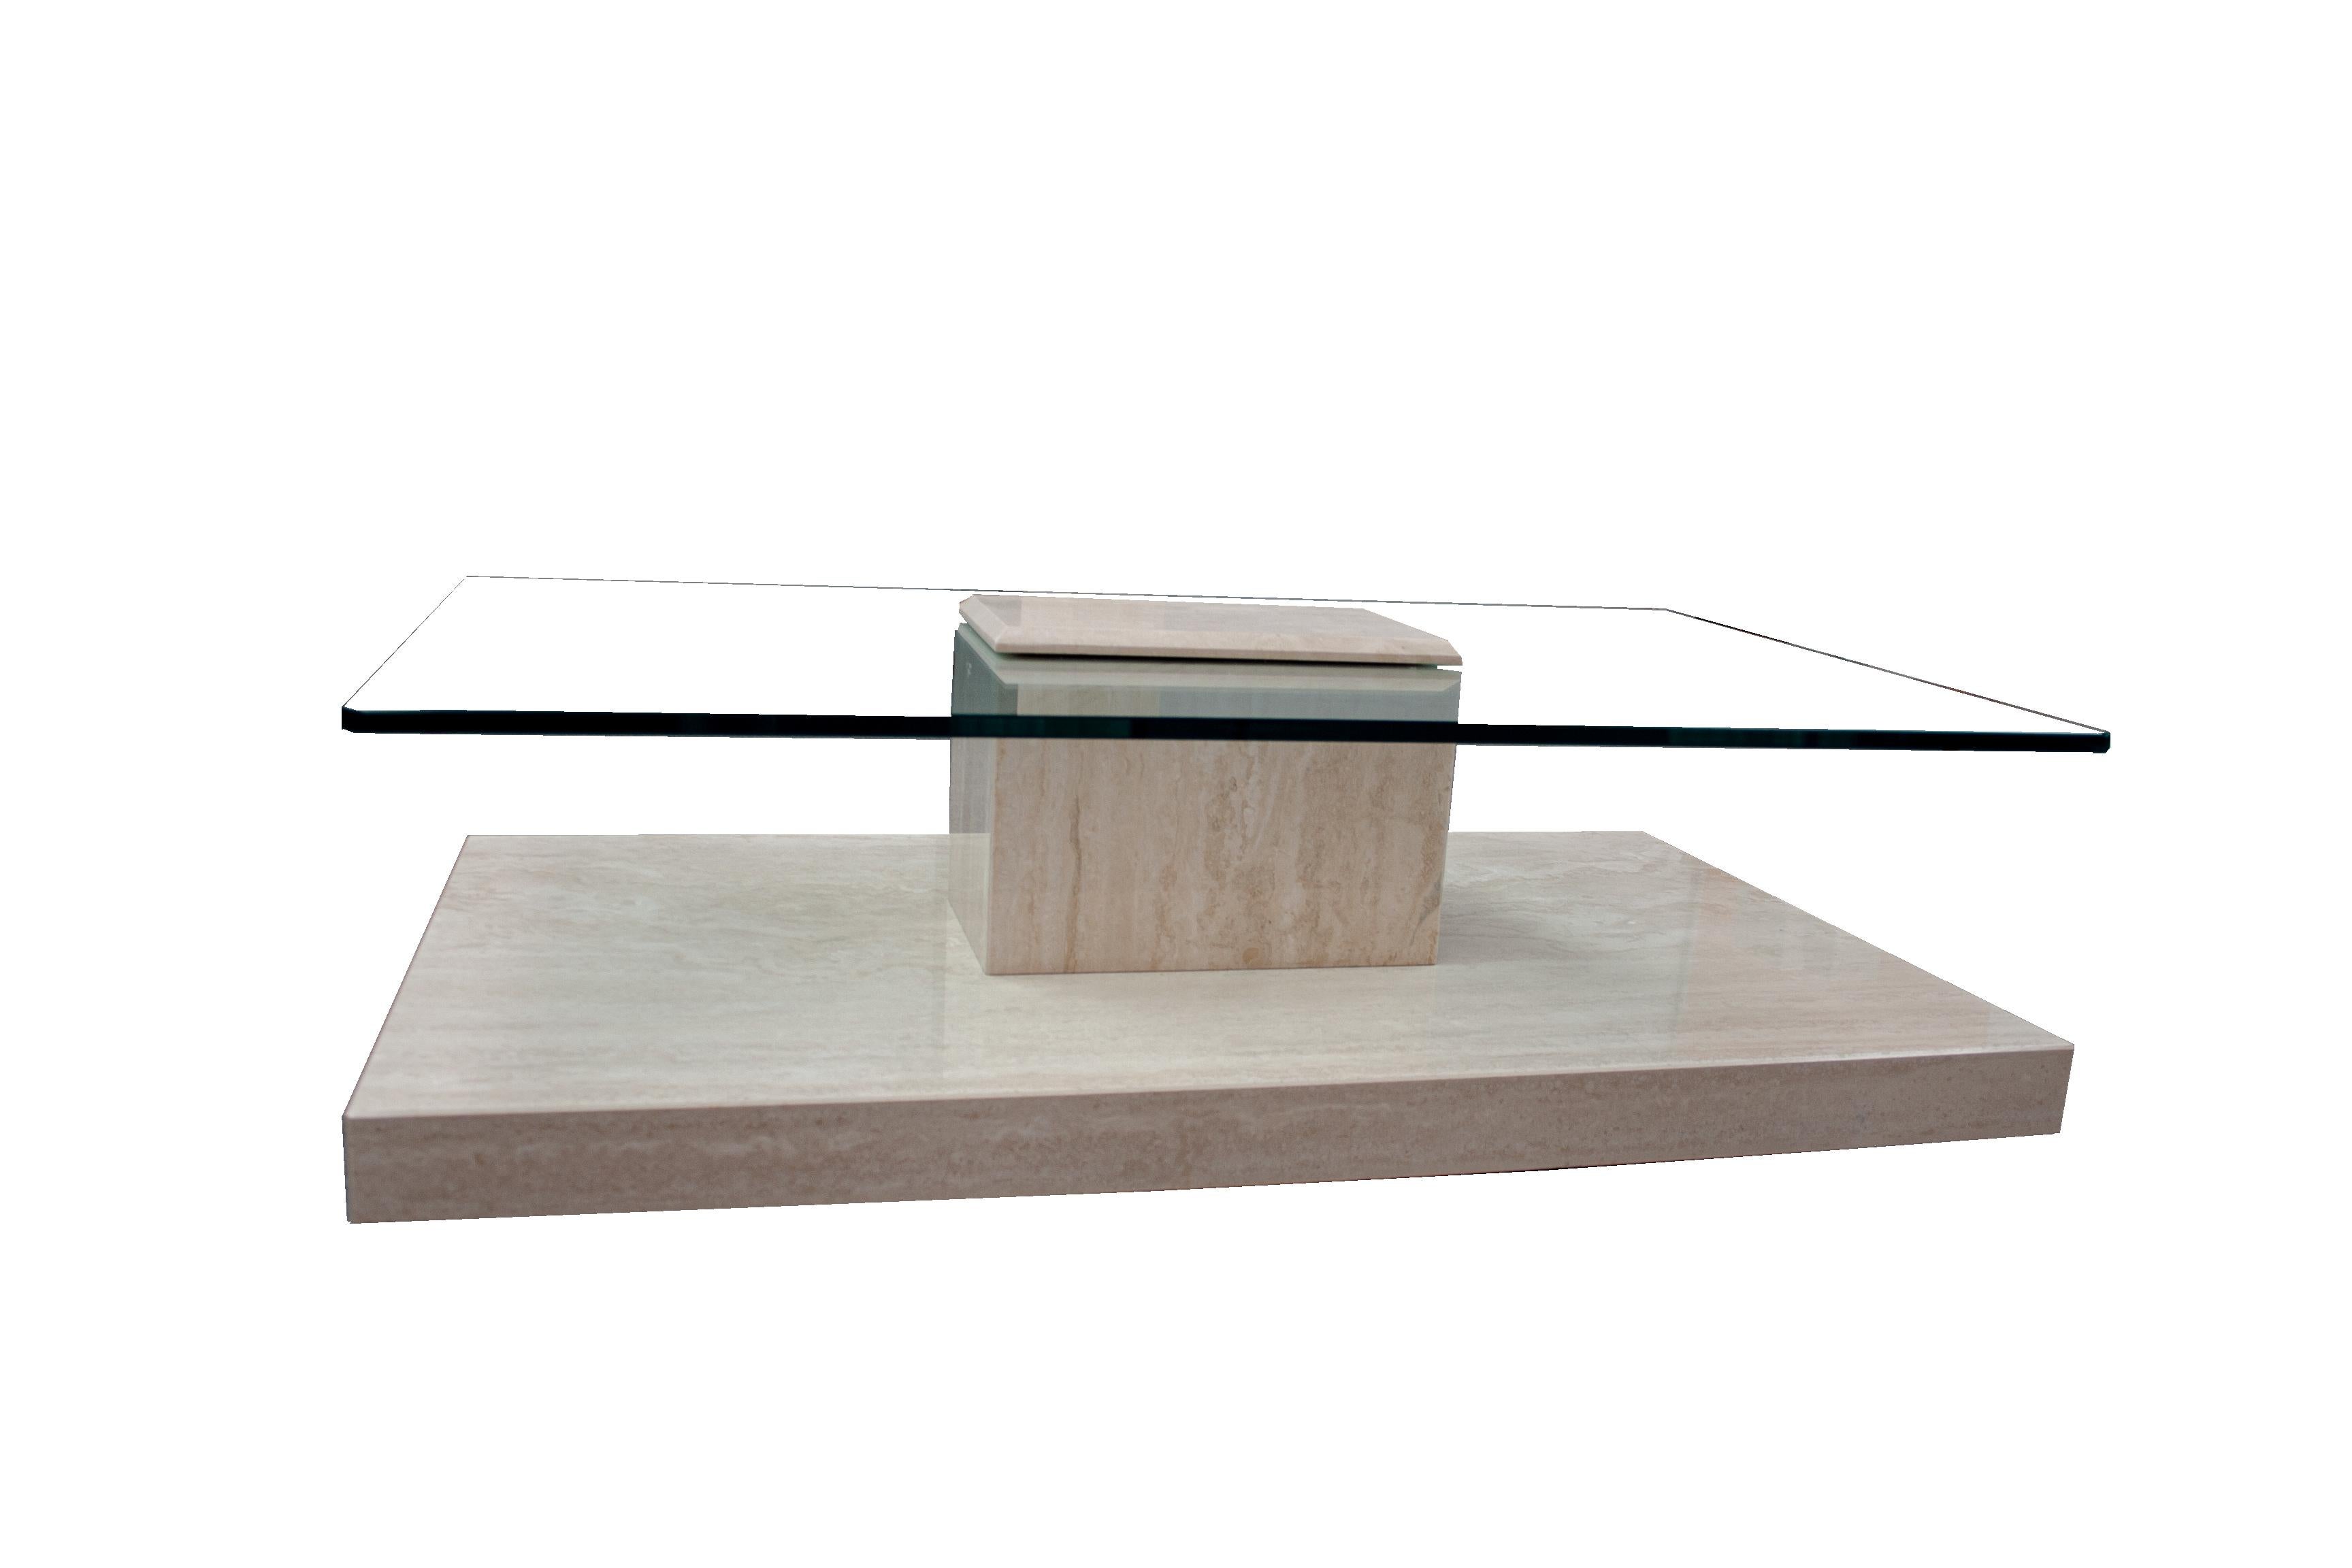 AKRA Table basse en verre et marbre travertin Design contemporain Espagne En stock.
Cette table basse en marbre travertin poli avec verre a un design très particulier, ayant une partie du marbre qui recouvre le verre sur la surface et le joint avec